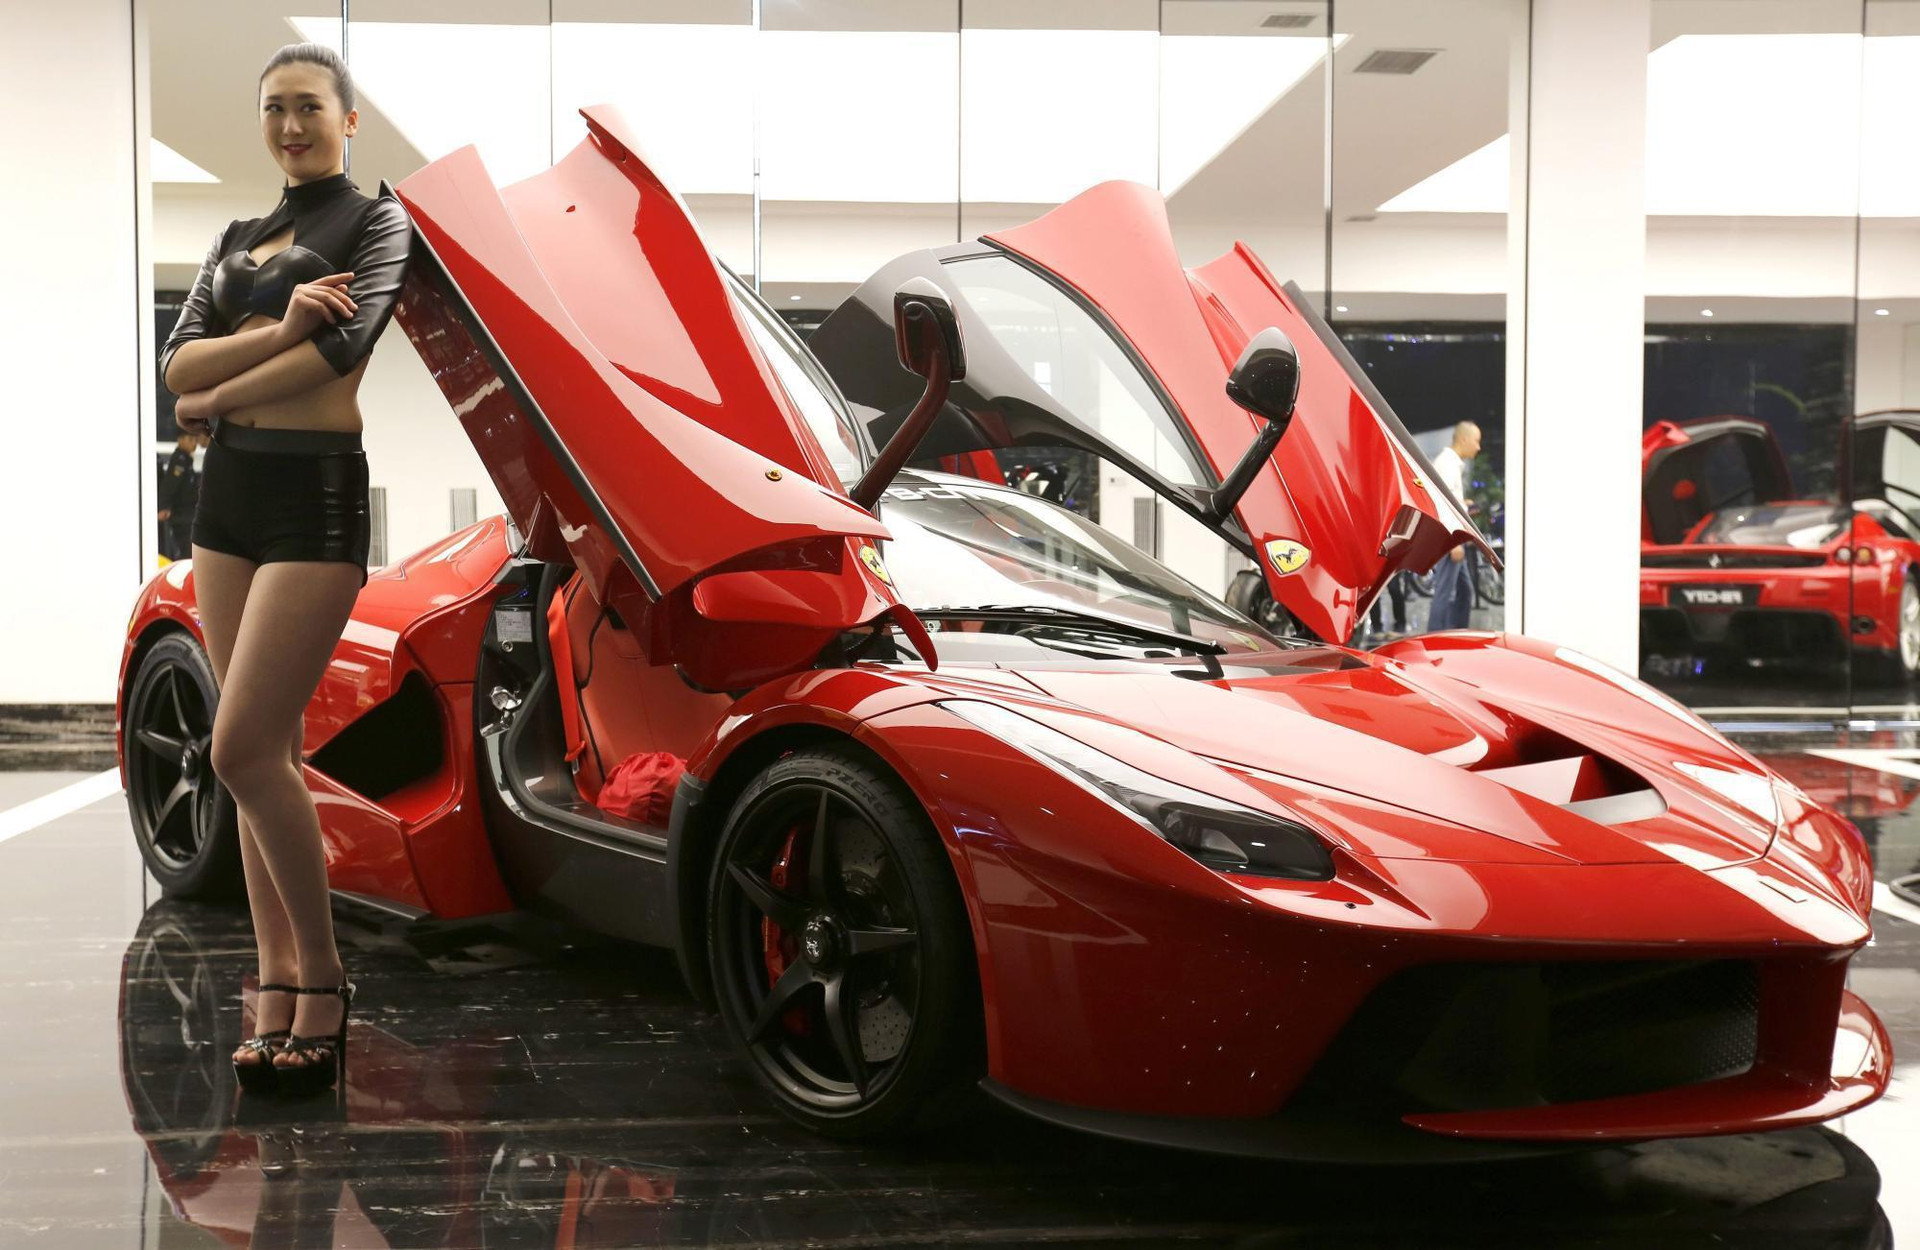 Phụ nữ tại quốc gia gần sát Việt Nam đang mua Ferrari nhiều nhất thế giới: Trung bình cứ 4 chiếc sẽ có 1 tài xế nữ - Ảnh 1.